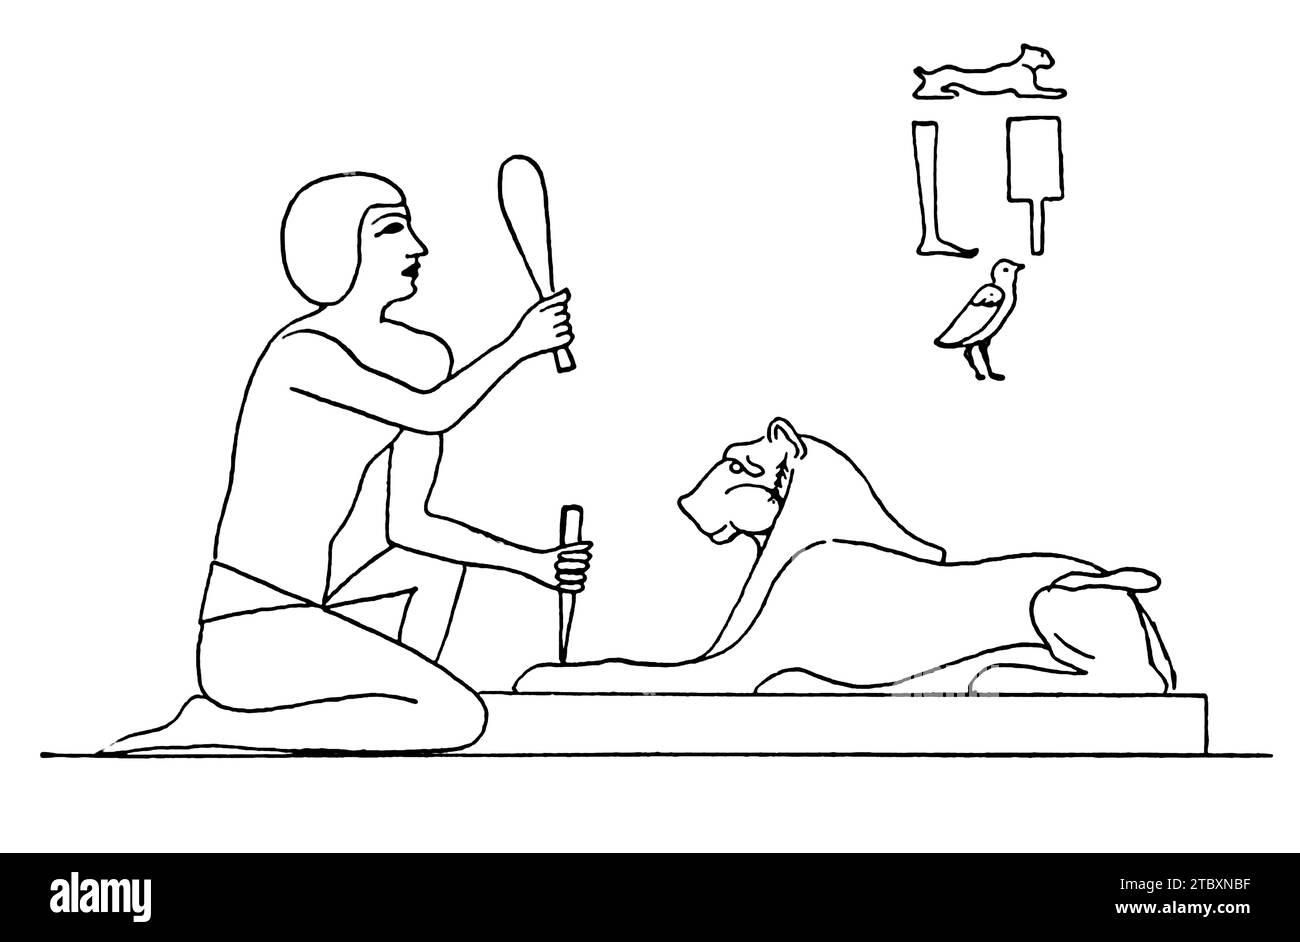 Illustrazione di antichi scalpellini egiziani con scalpelli al lavoro. Da "metodi di estrazione degli antichi" di W. F. Durfee dell'Engineering Magaz Foto Stock